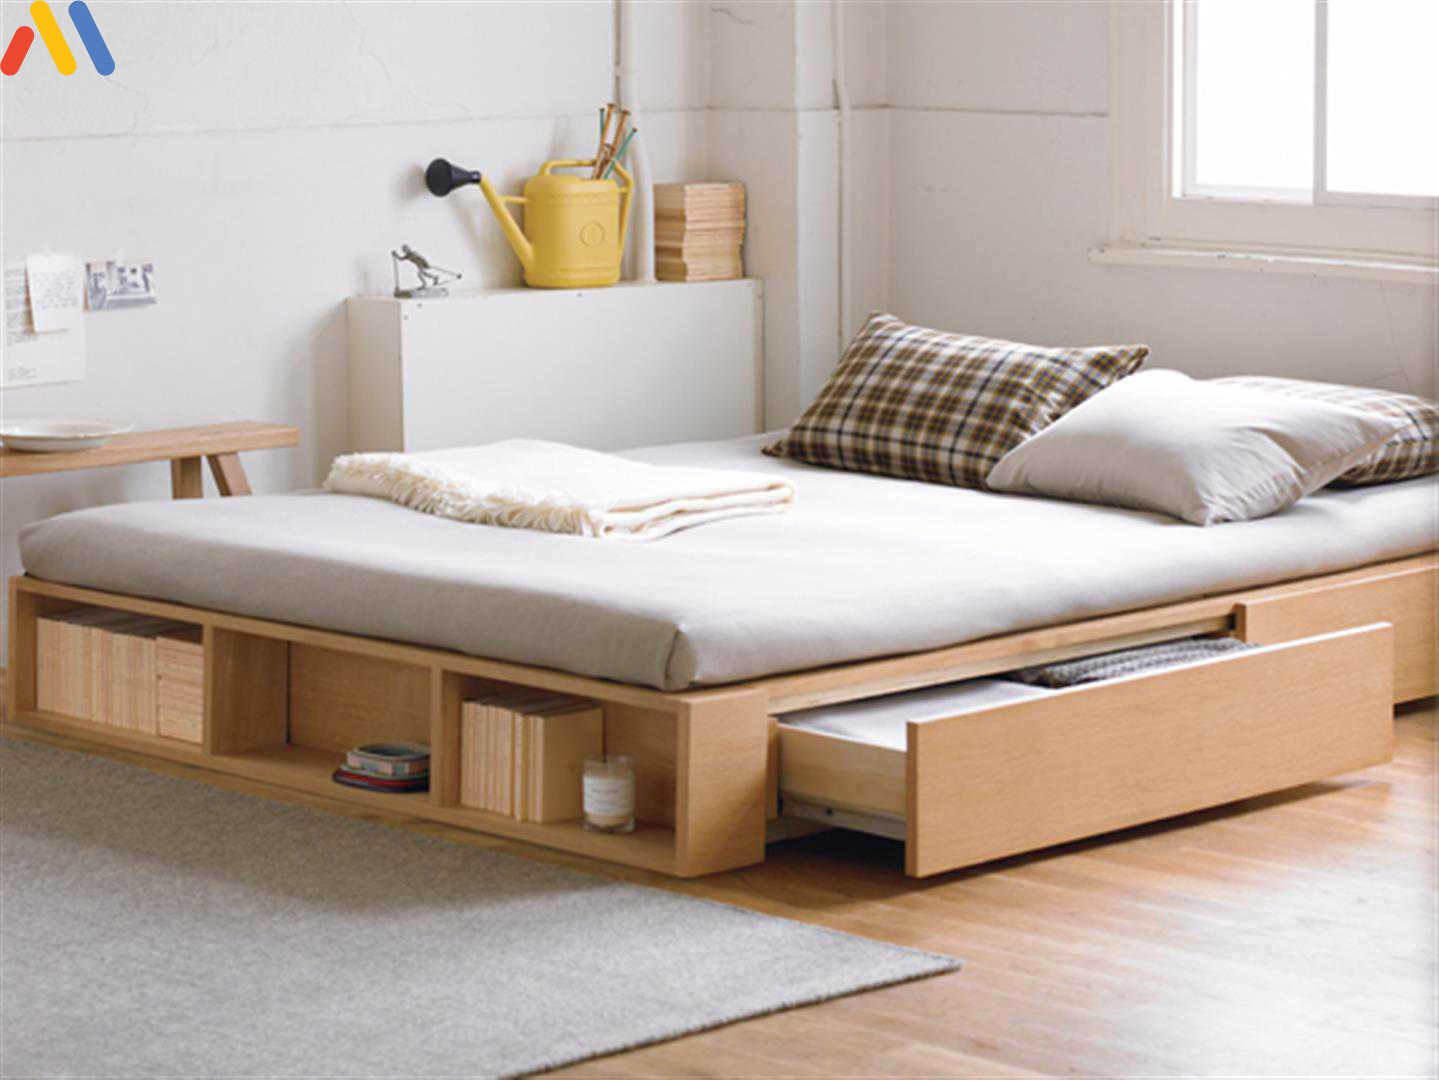 Sử dụng nội thất thông minh sẽ giúp tiết kiệm diện tích phòng ngủ 25m2